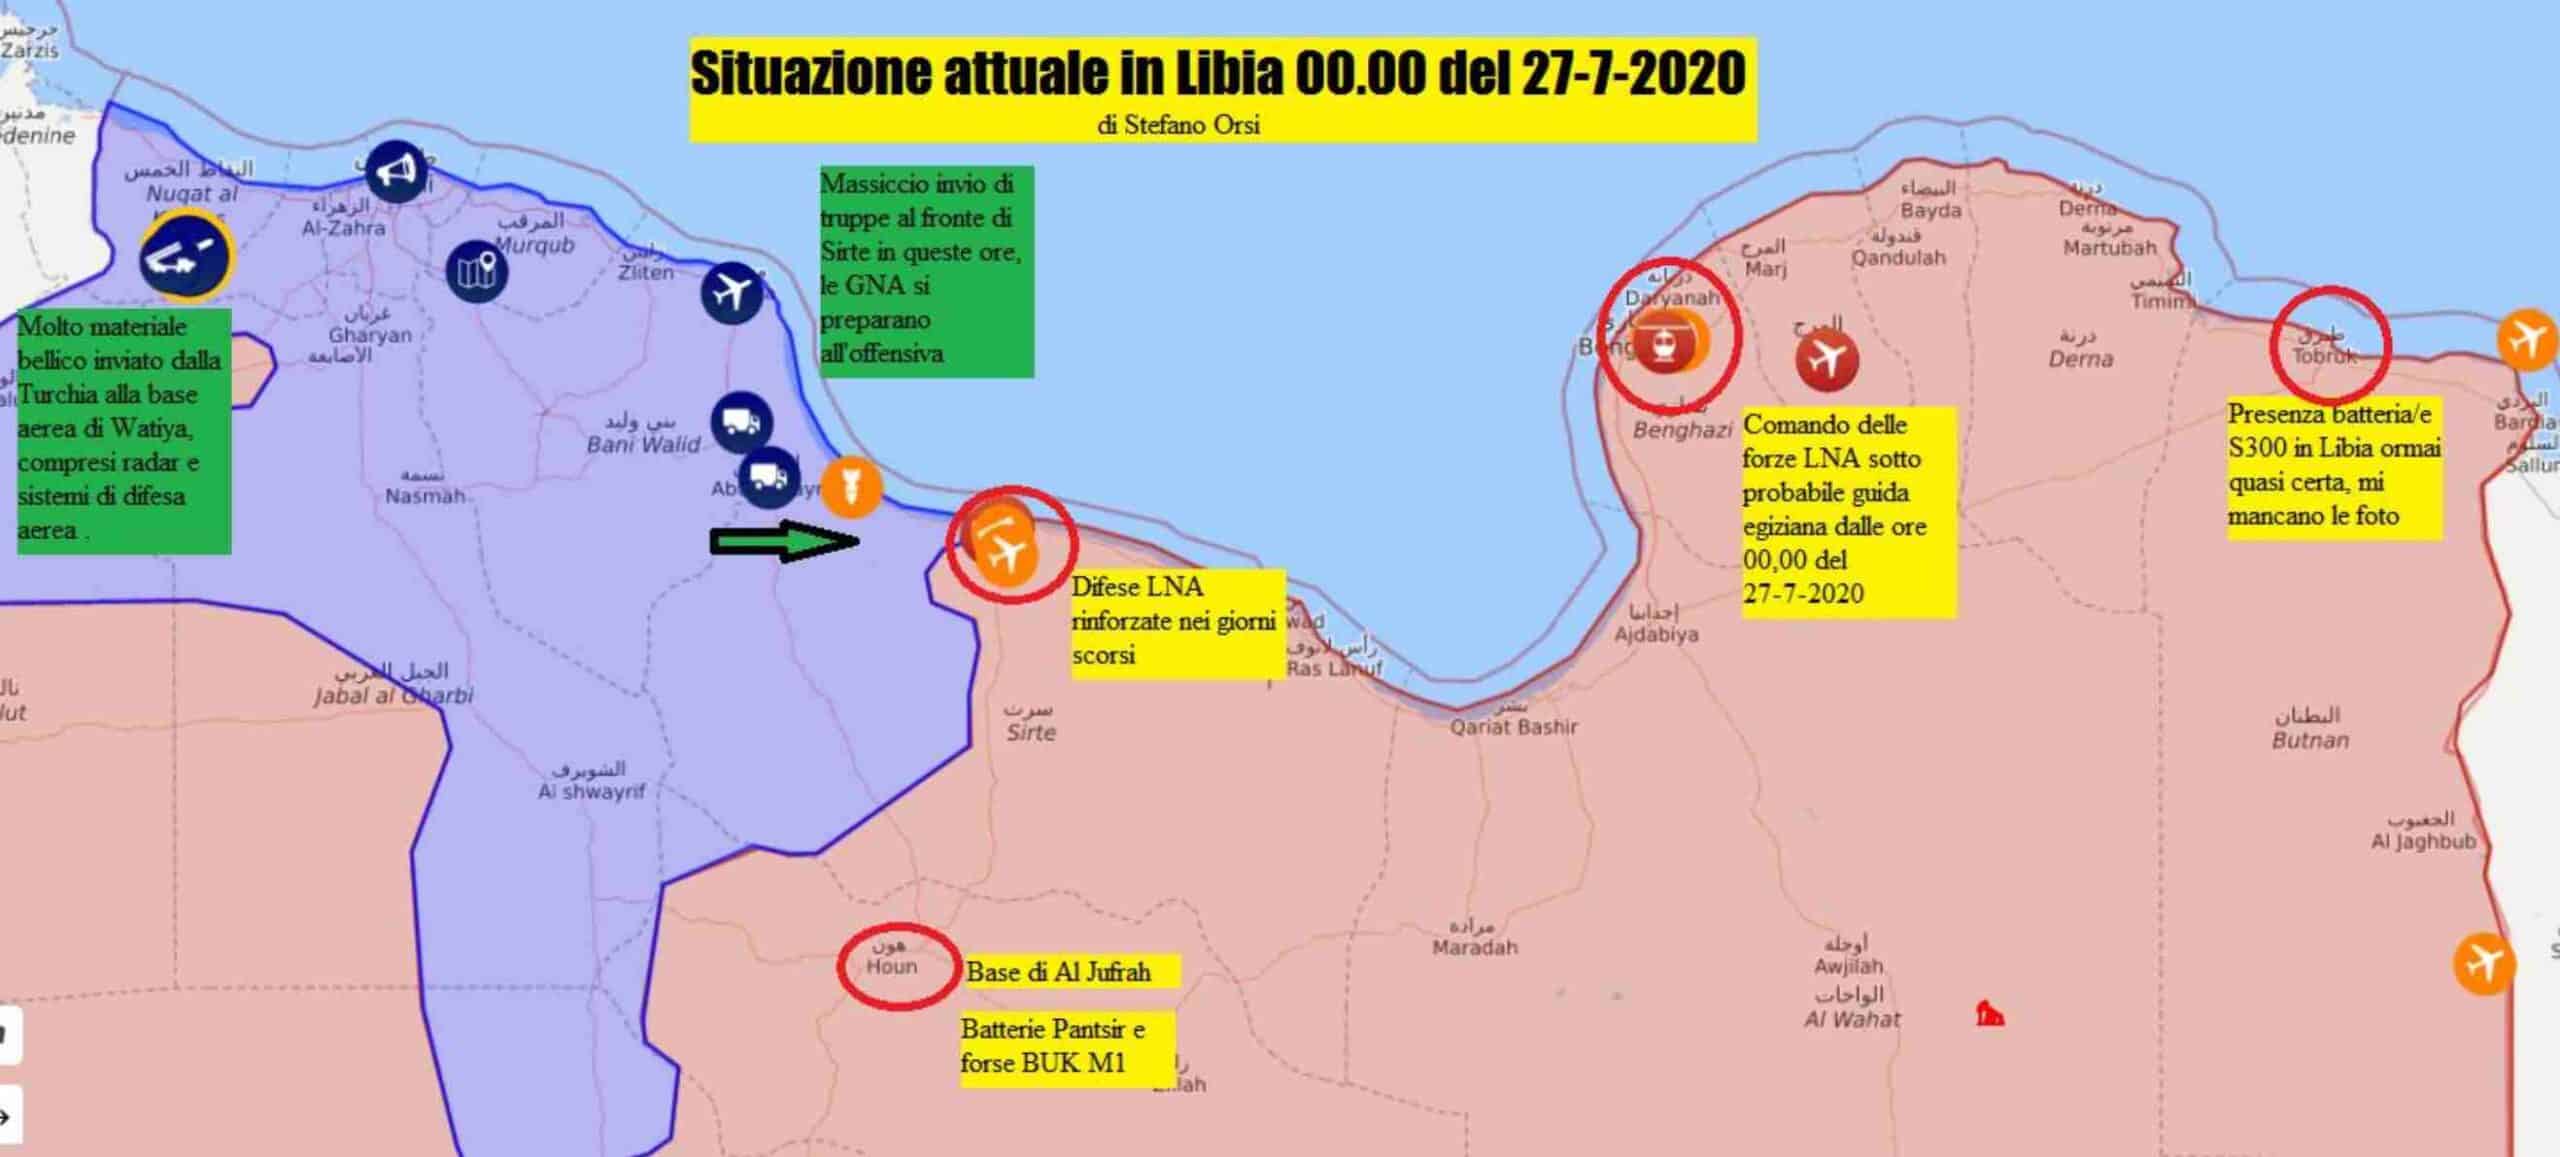 Stefano Orsi: aggiornamento sui fronti libici 27 luglio 2020 1